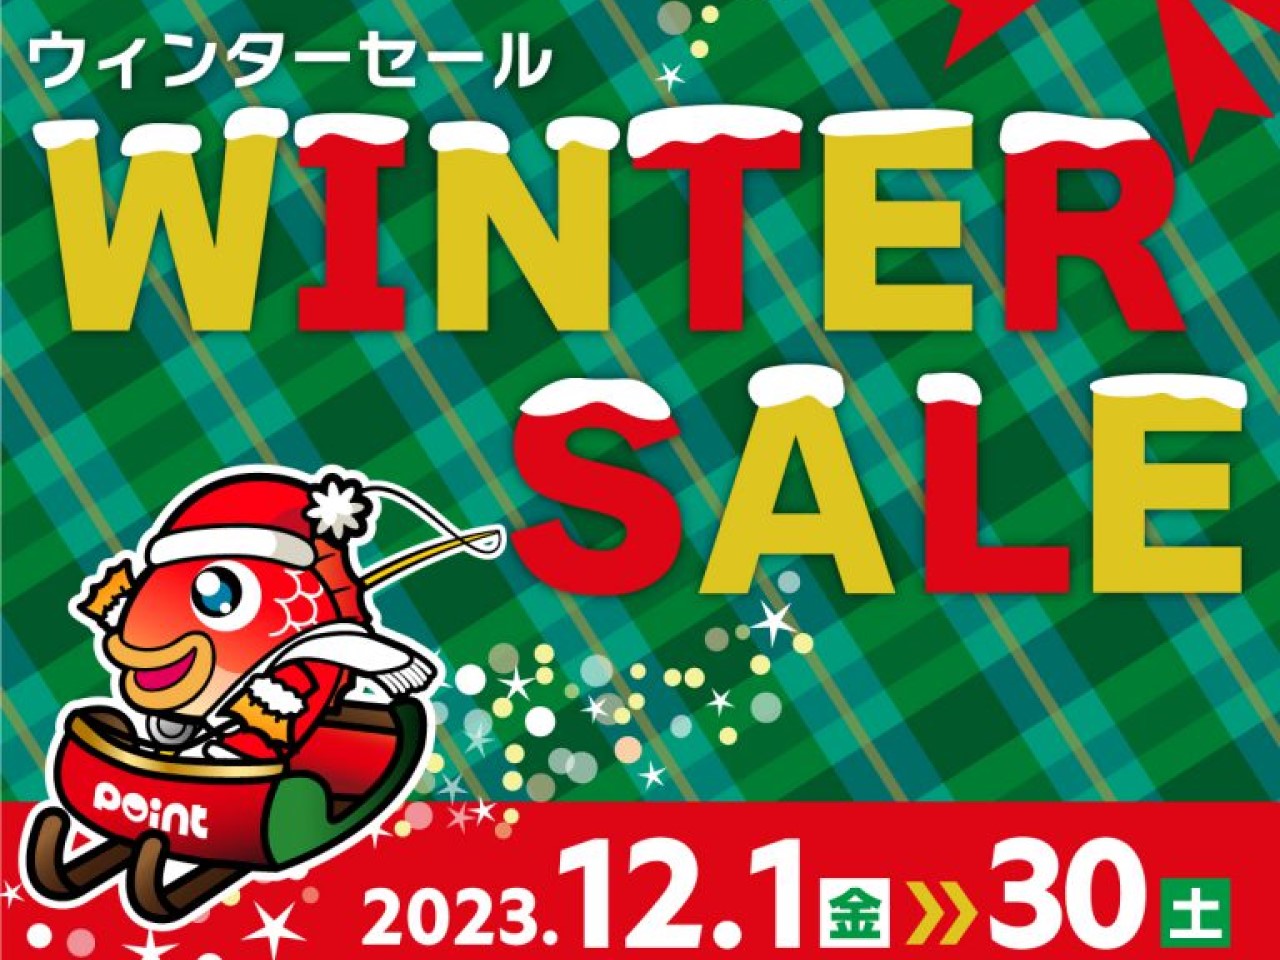 Winter sale top 768x768 1 1